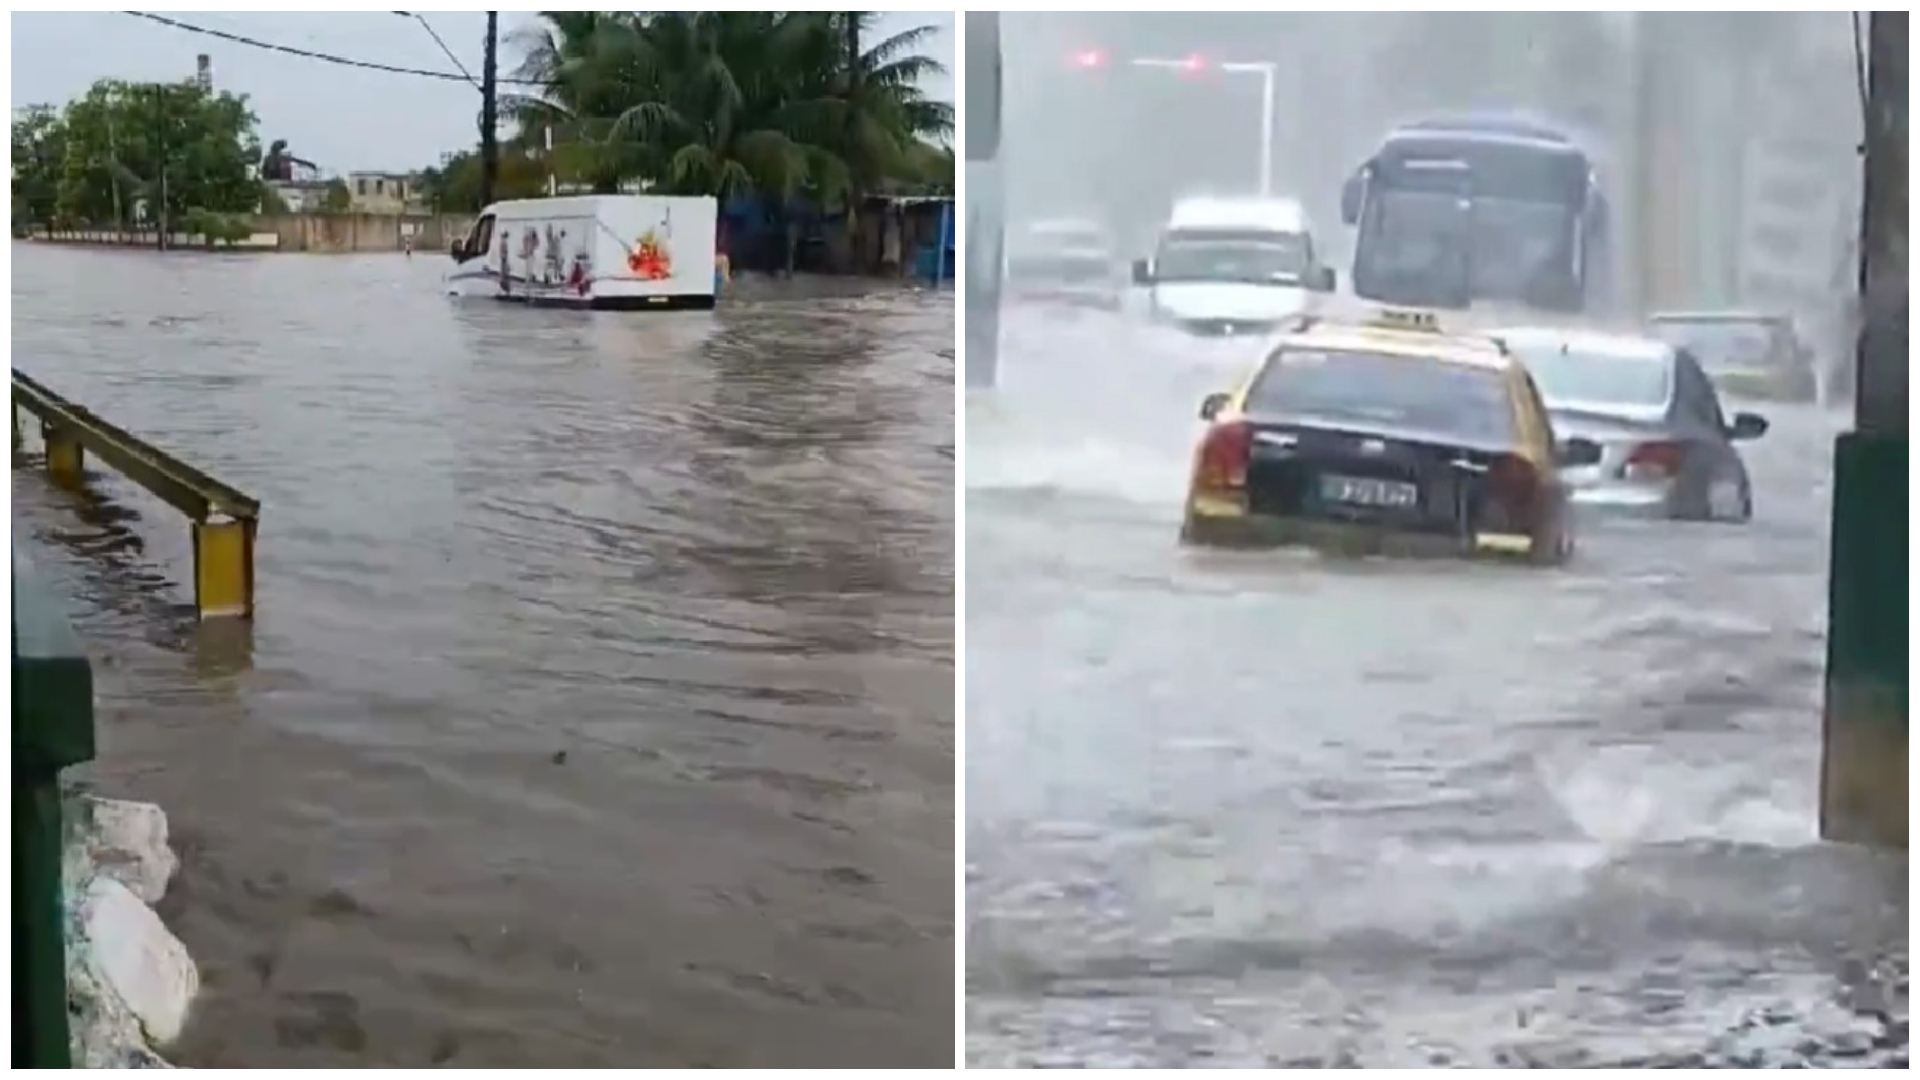 Las calles de La Habana terminaron bajo el agua este sábado. (Captura de pantalla © Mario J. Pentón-Twitter)